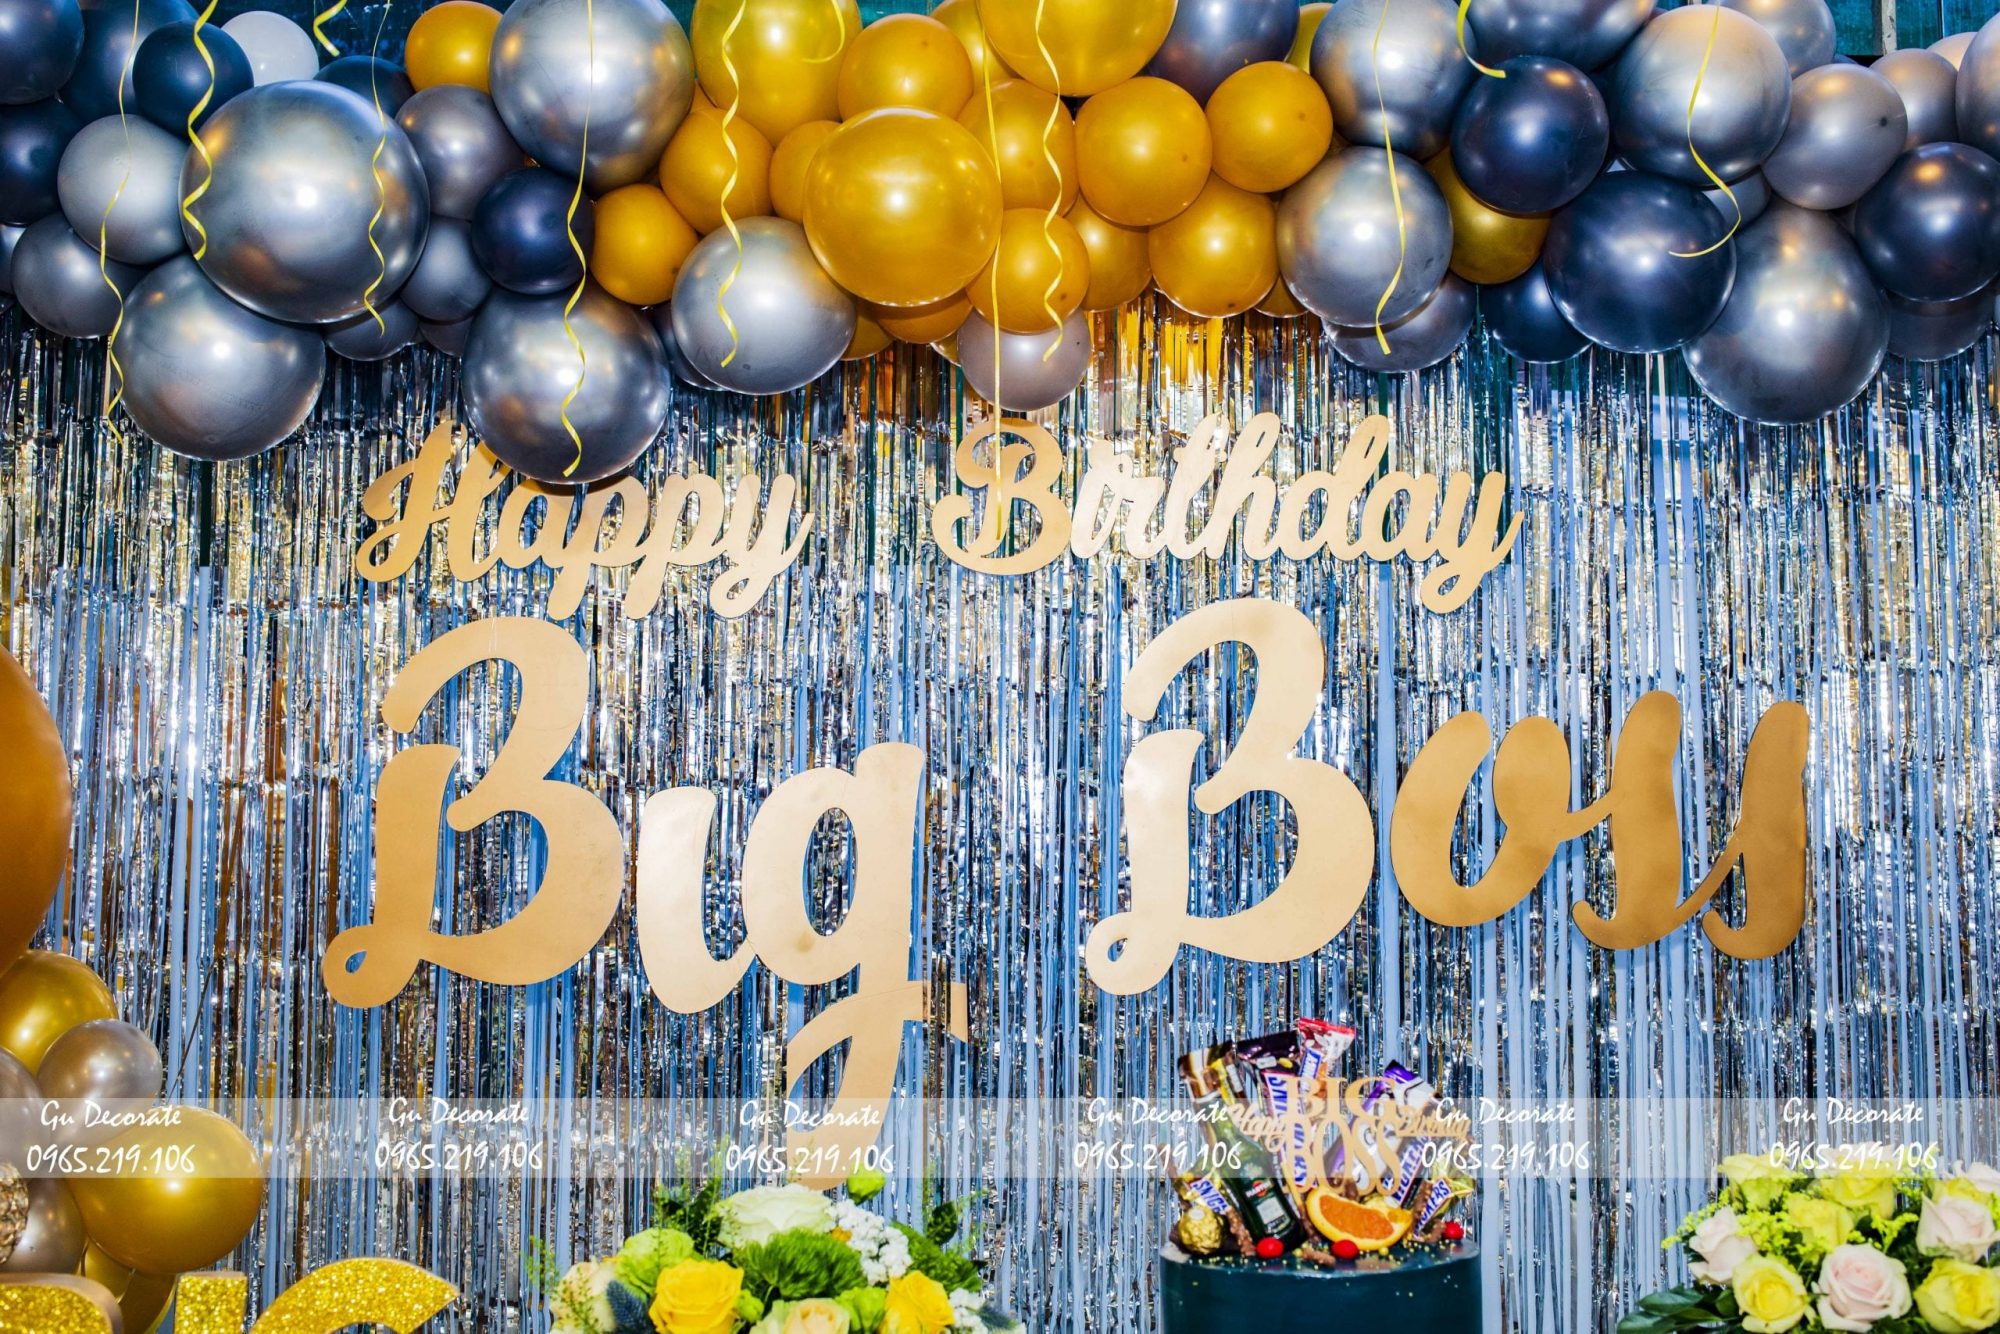 Hướng dẫn tự trang trí sinh nhật bằng bong bóng tại nhà vô cùng đơn gi  phukienthuynga